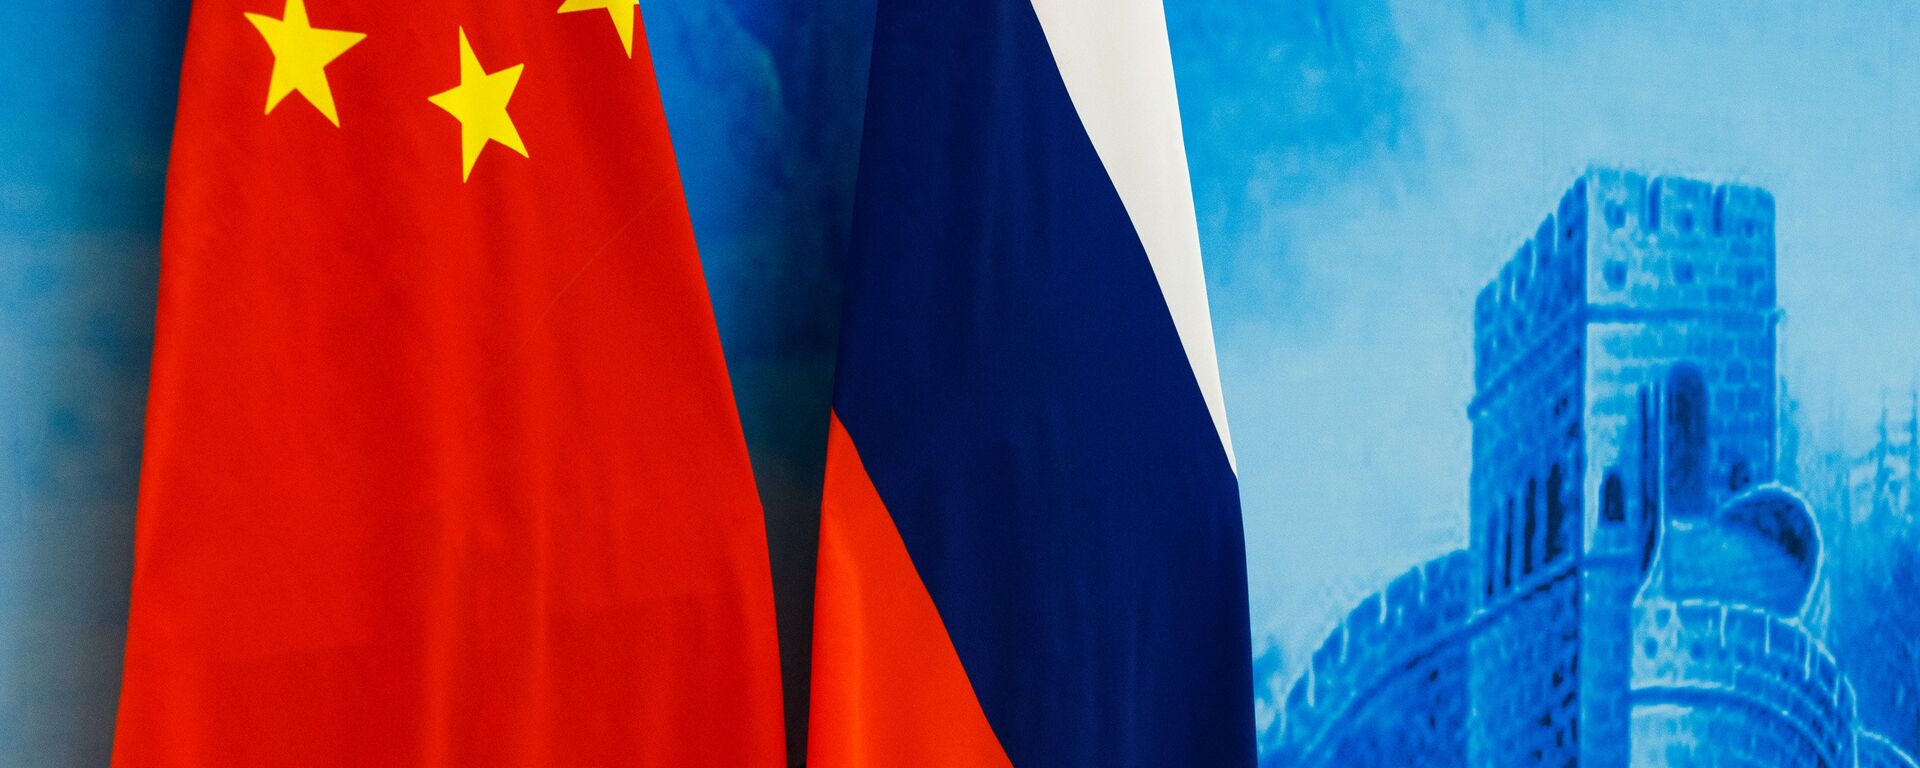 Las banderas de Rusia y China - Sputnik Mundo, 1920, 27.10.2021